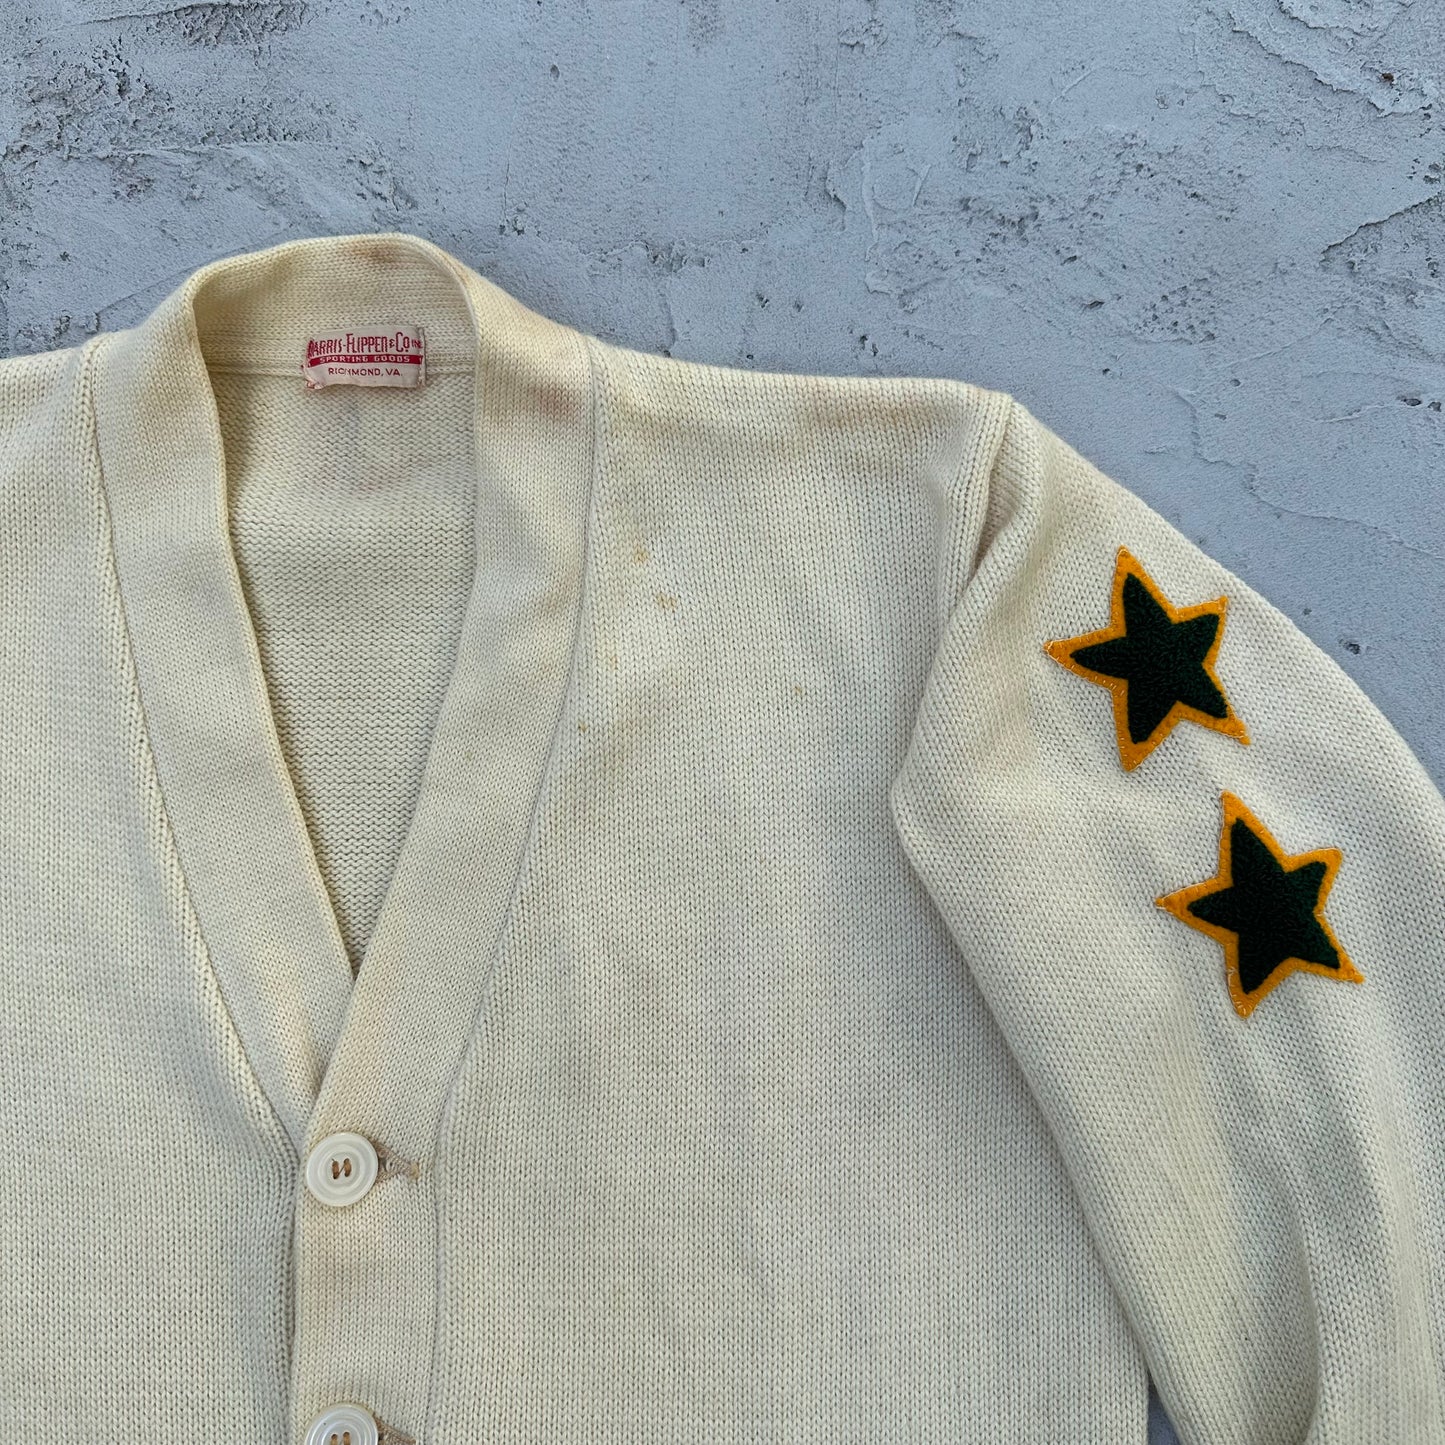 Vintage Letterman Cardigan Sweater Cream Stars - M